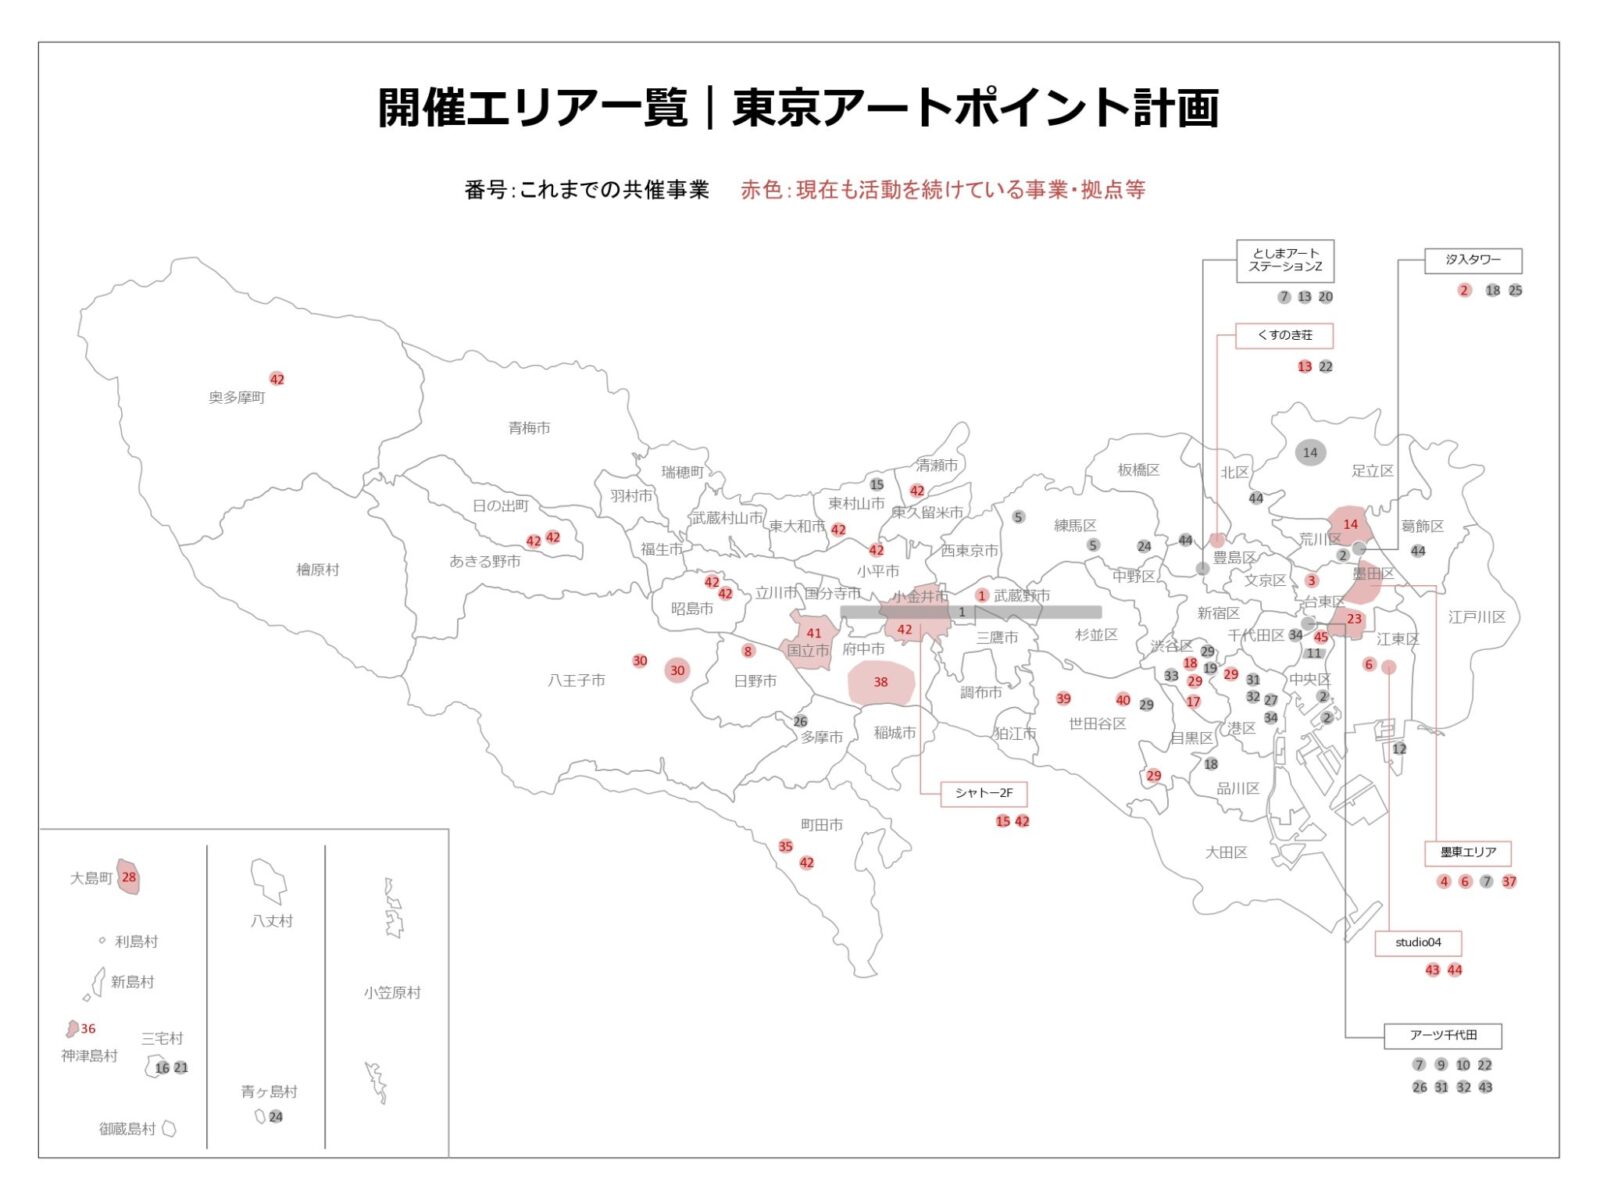 東京都の白地図に、東京アートポイント計画が実施してきたエリアがグレーでマークされている。そのうち、現在も活動を続けているエリアは赤色に塗られている。